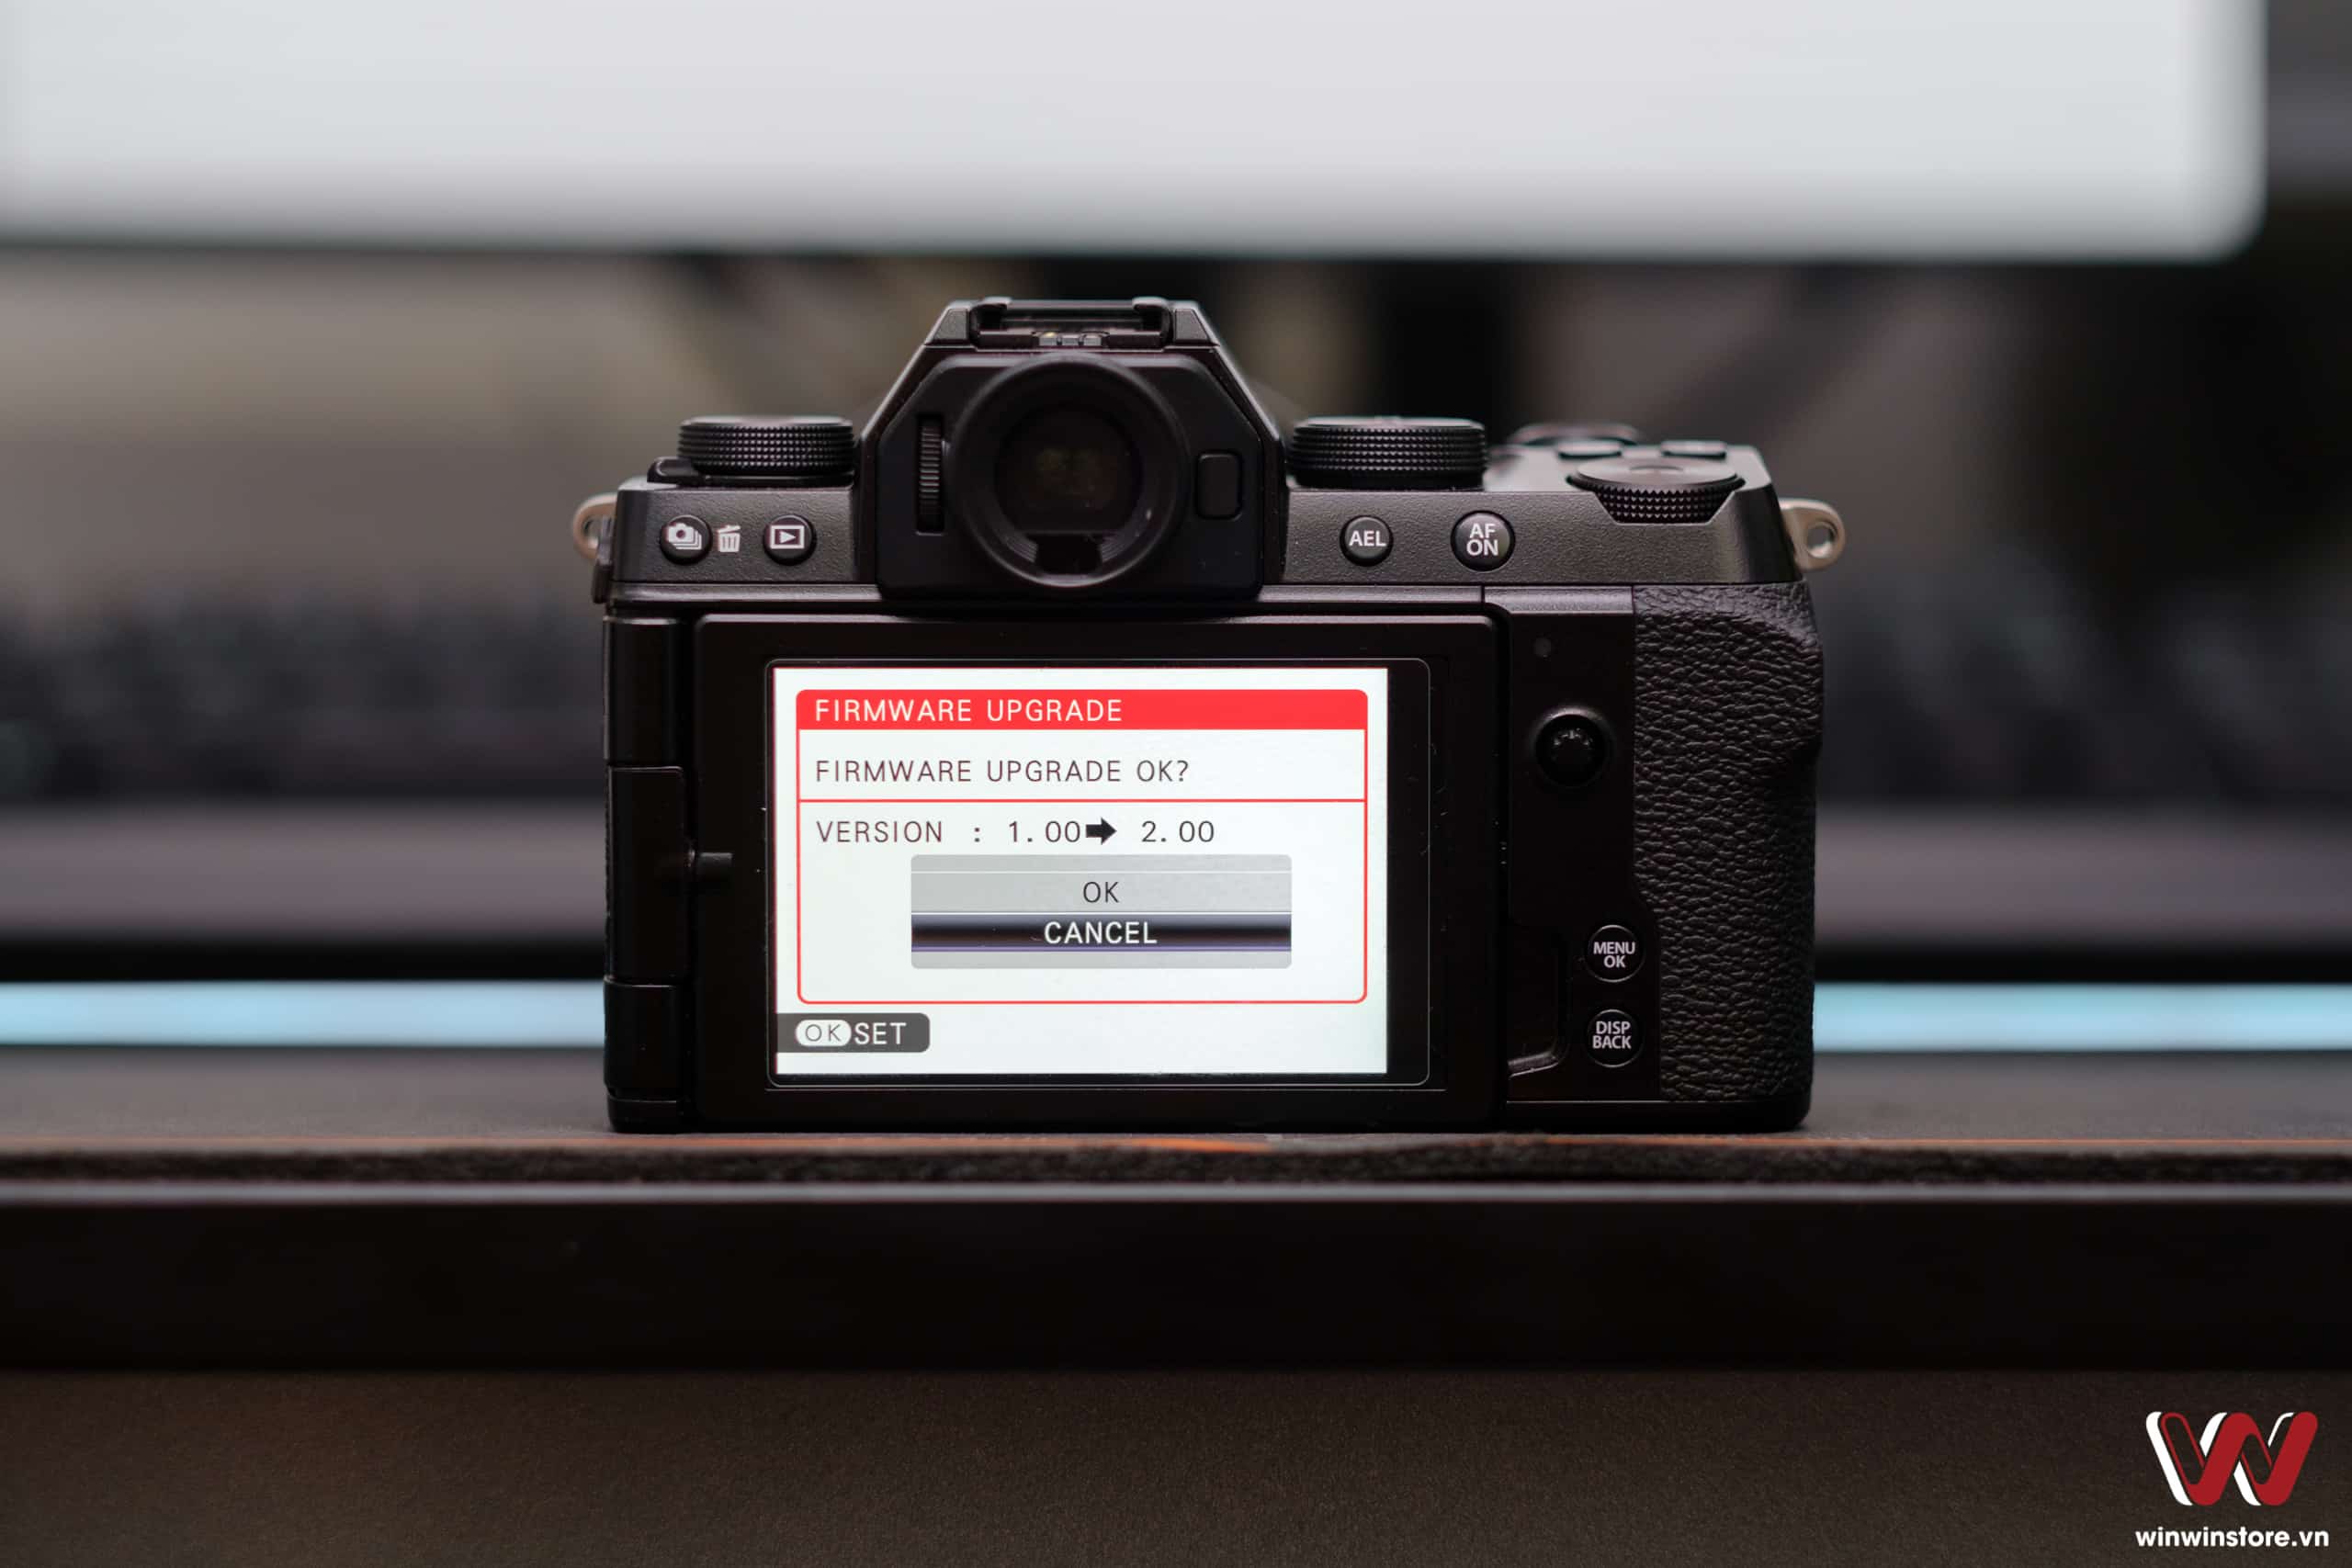 Fujifilm tung loạt firmware mới dành cho máy ảnh X-S10, GFX100 và GFX100S